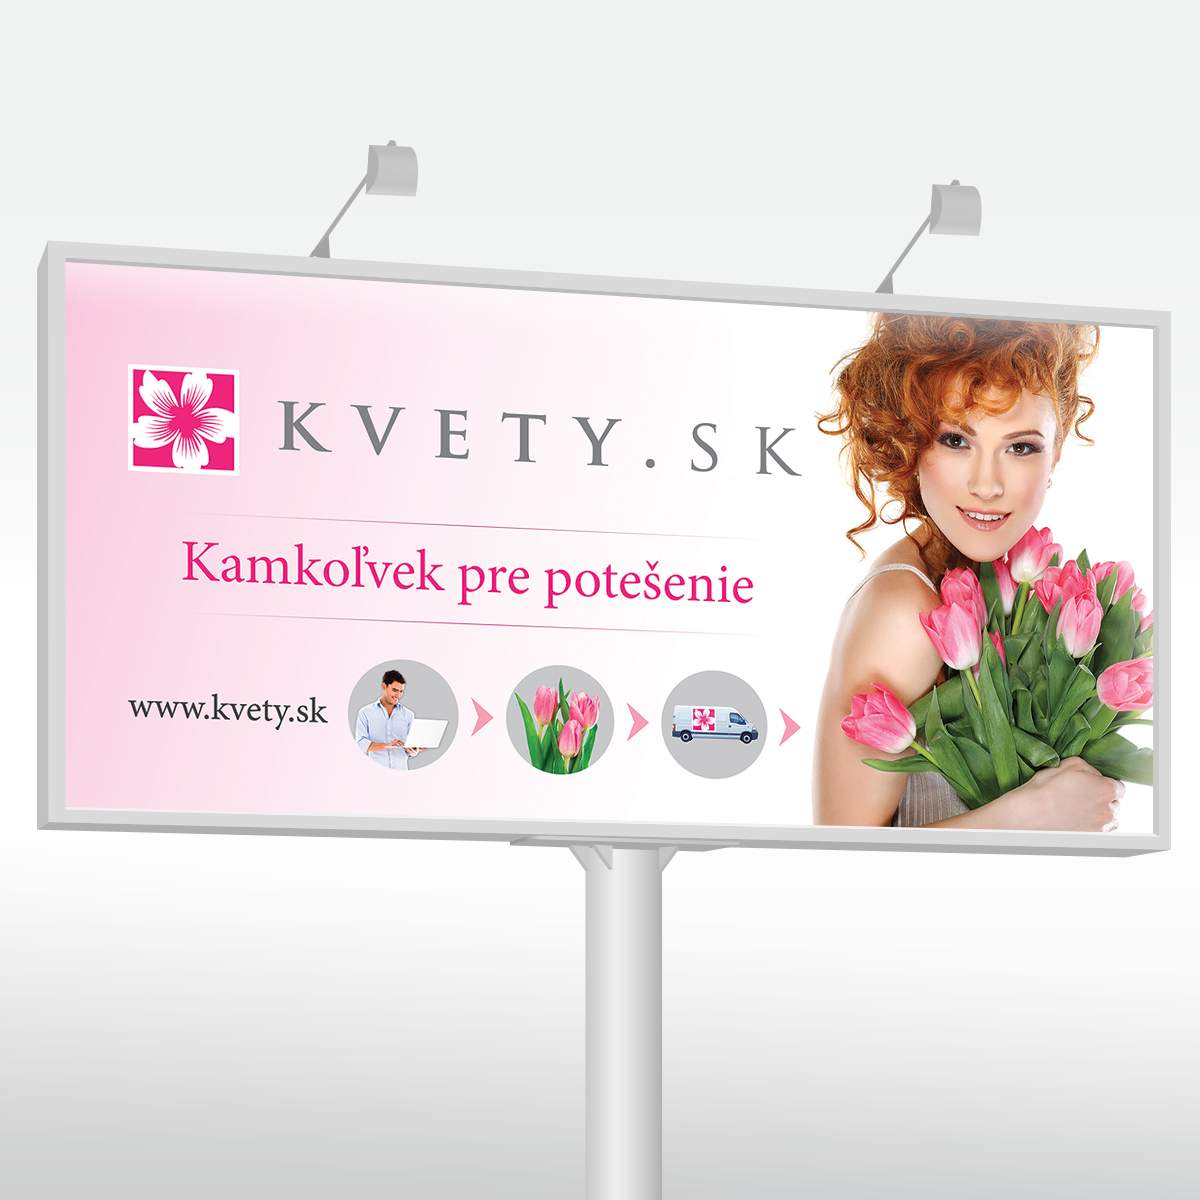 Ideas Innovations - Kvety.sk